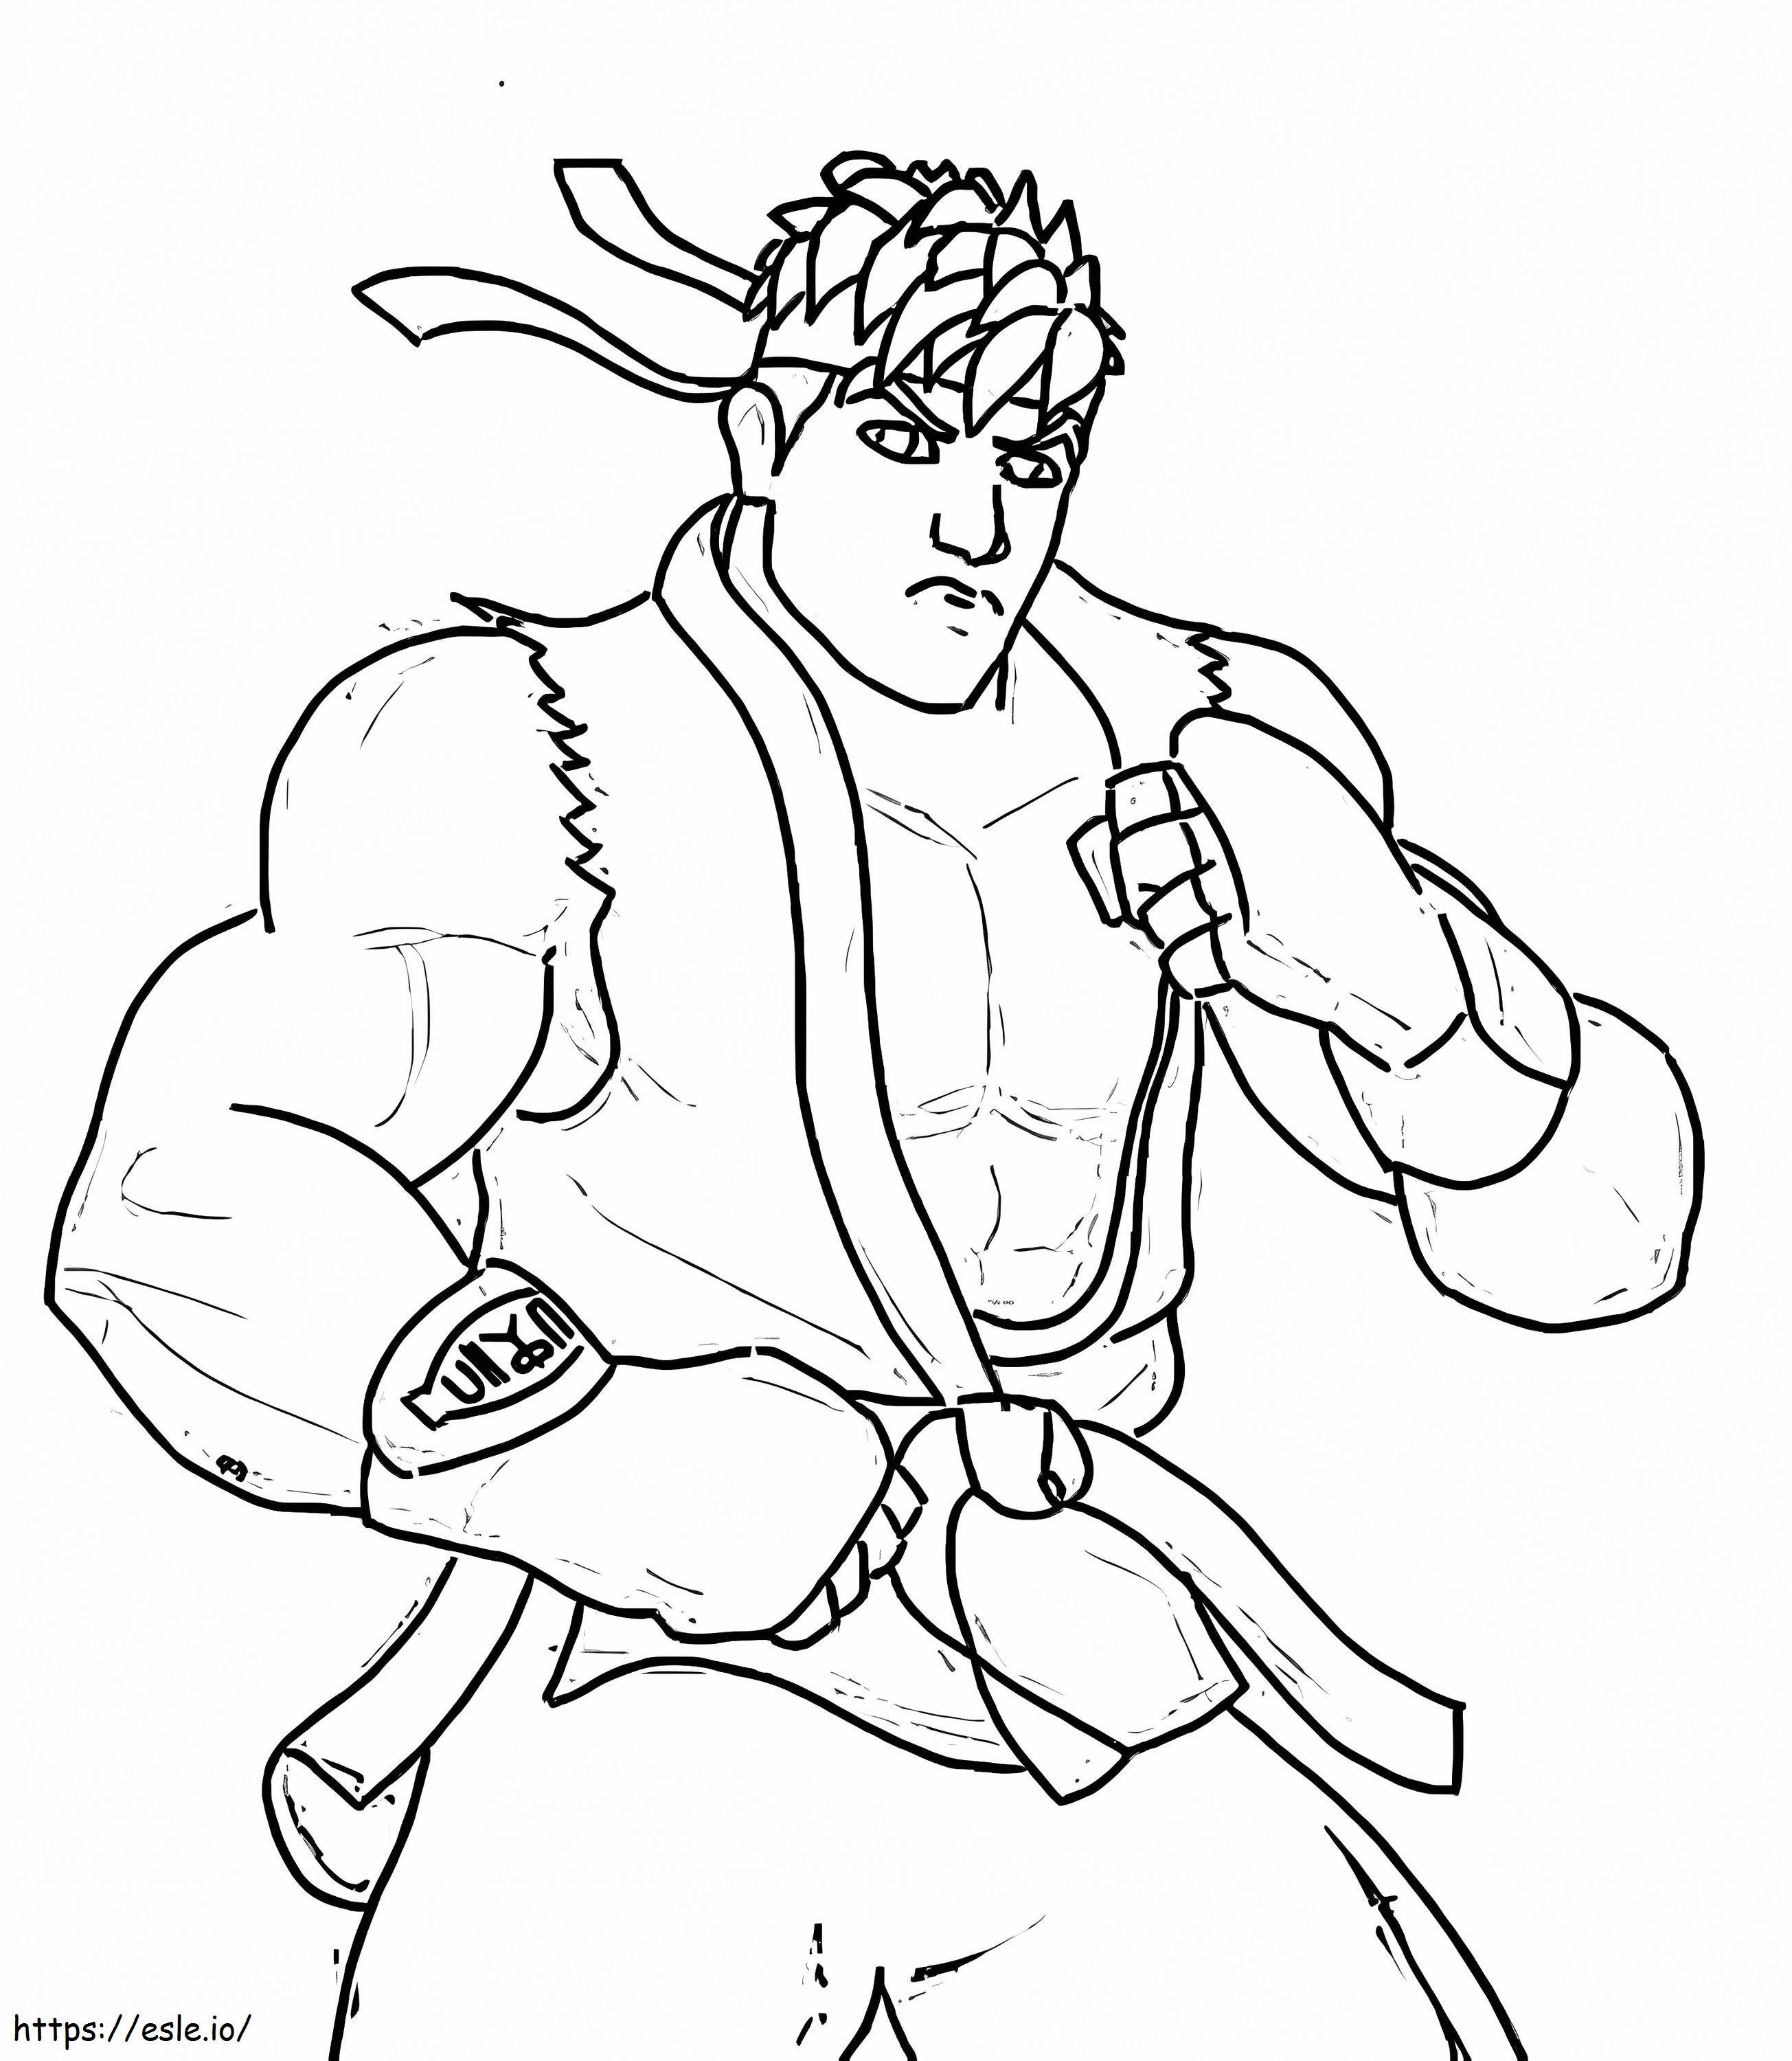 Ryu di base da colorare